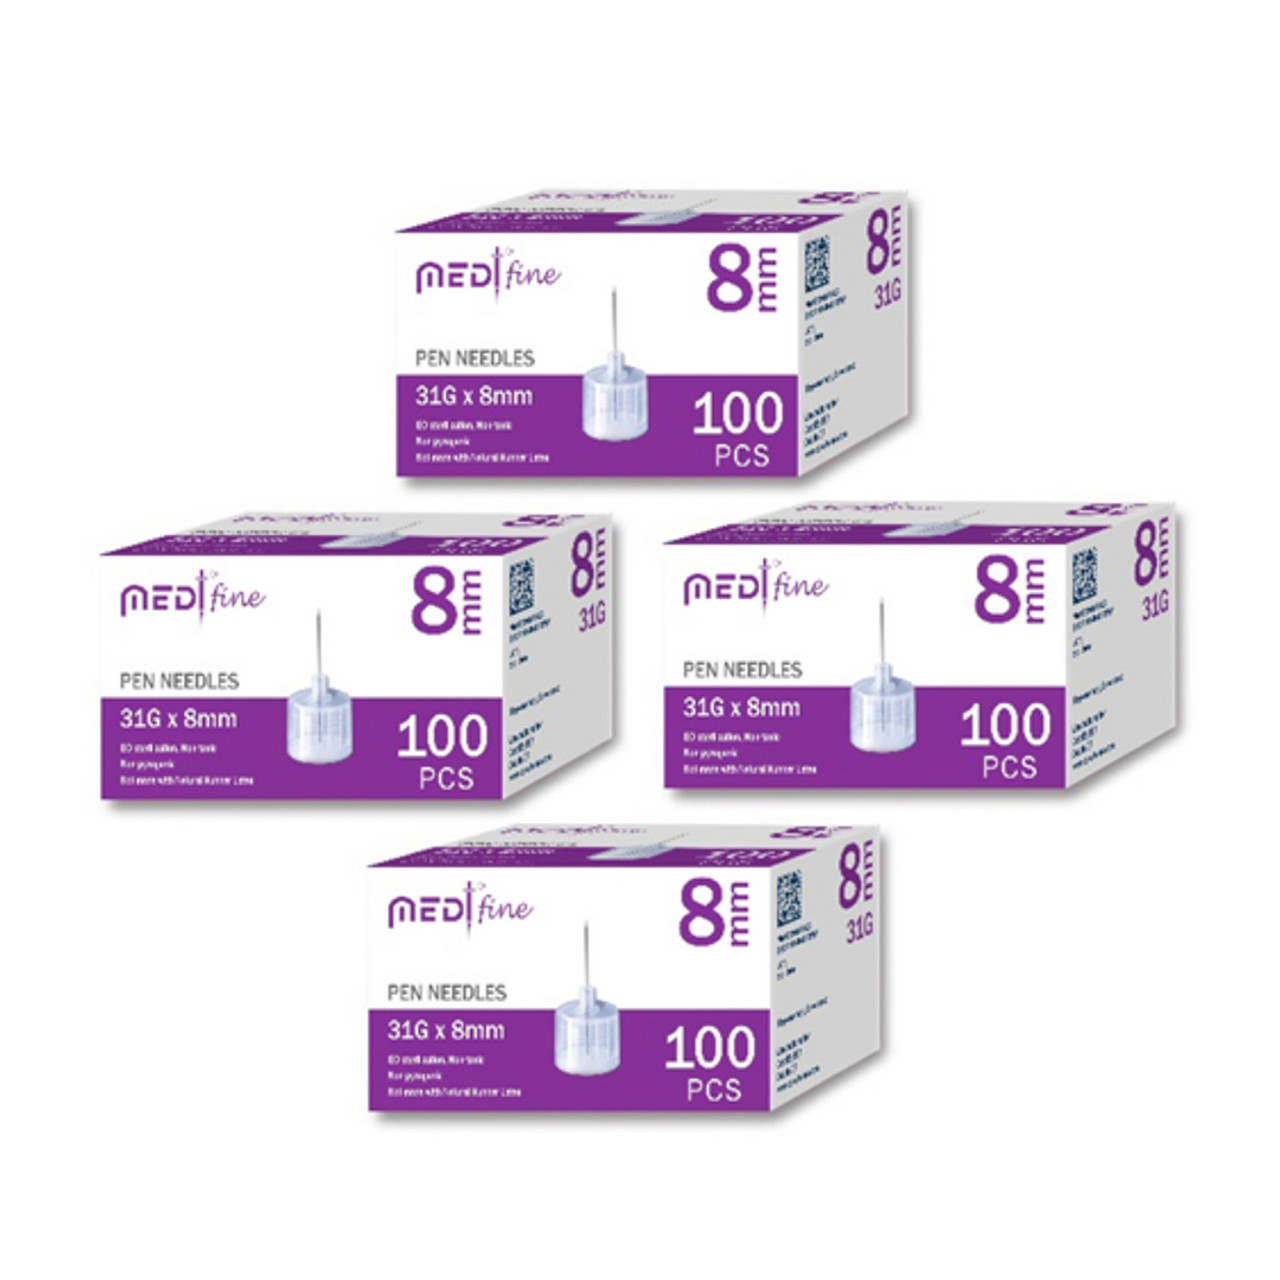 Carelife USA MedtFine Diabetes Pen Needles (31g 8mm) - 400 Pieces